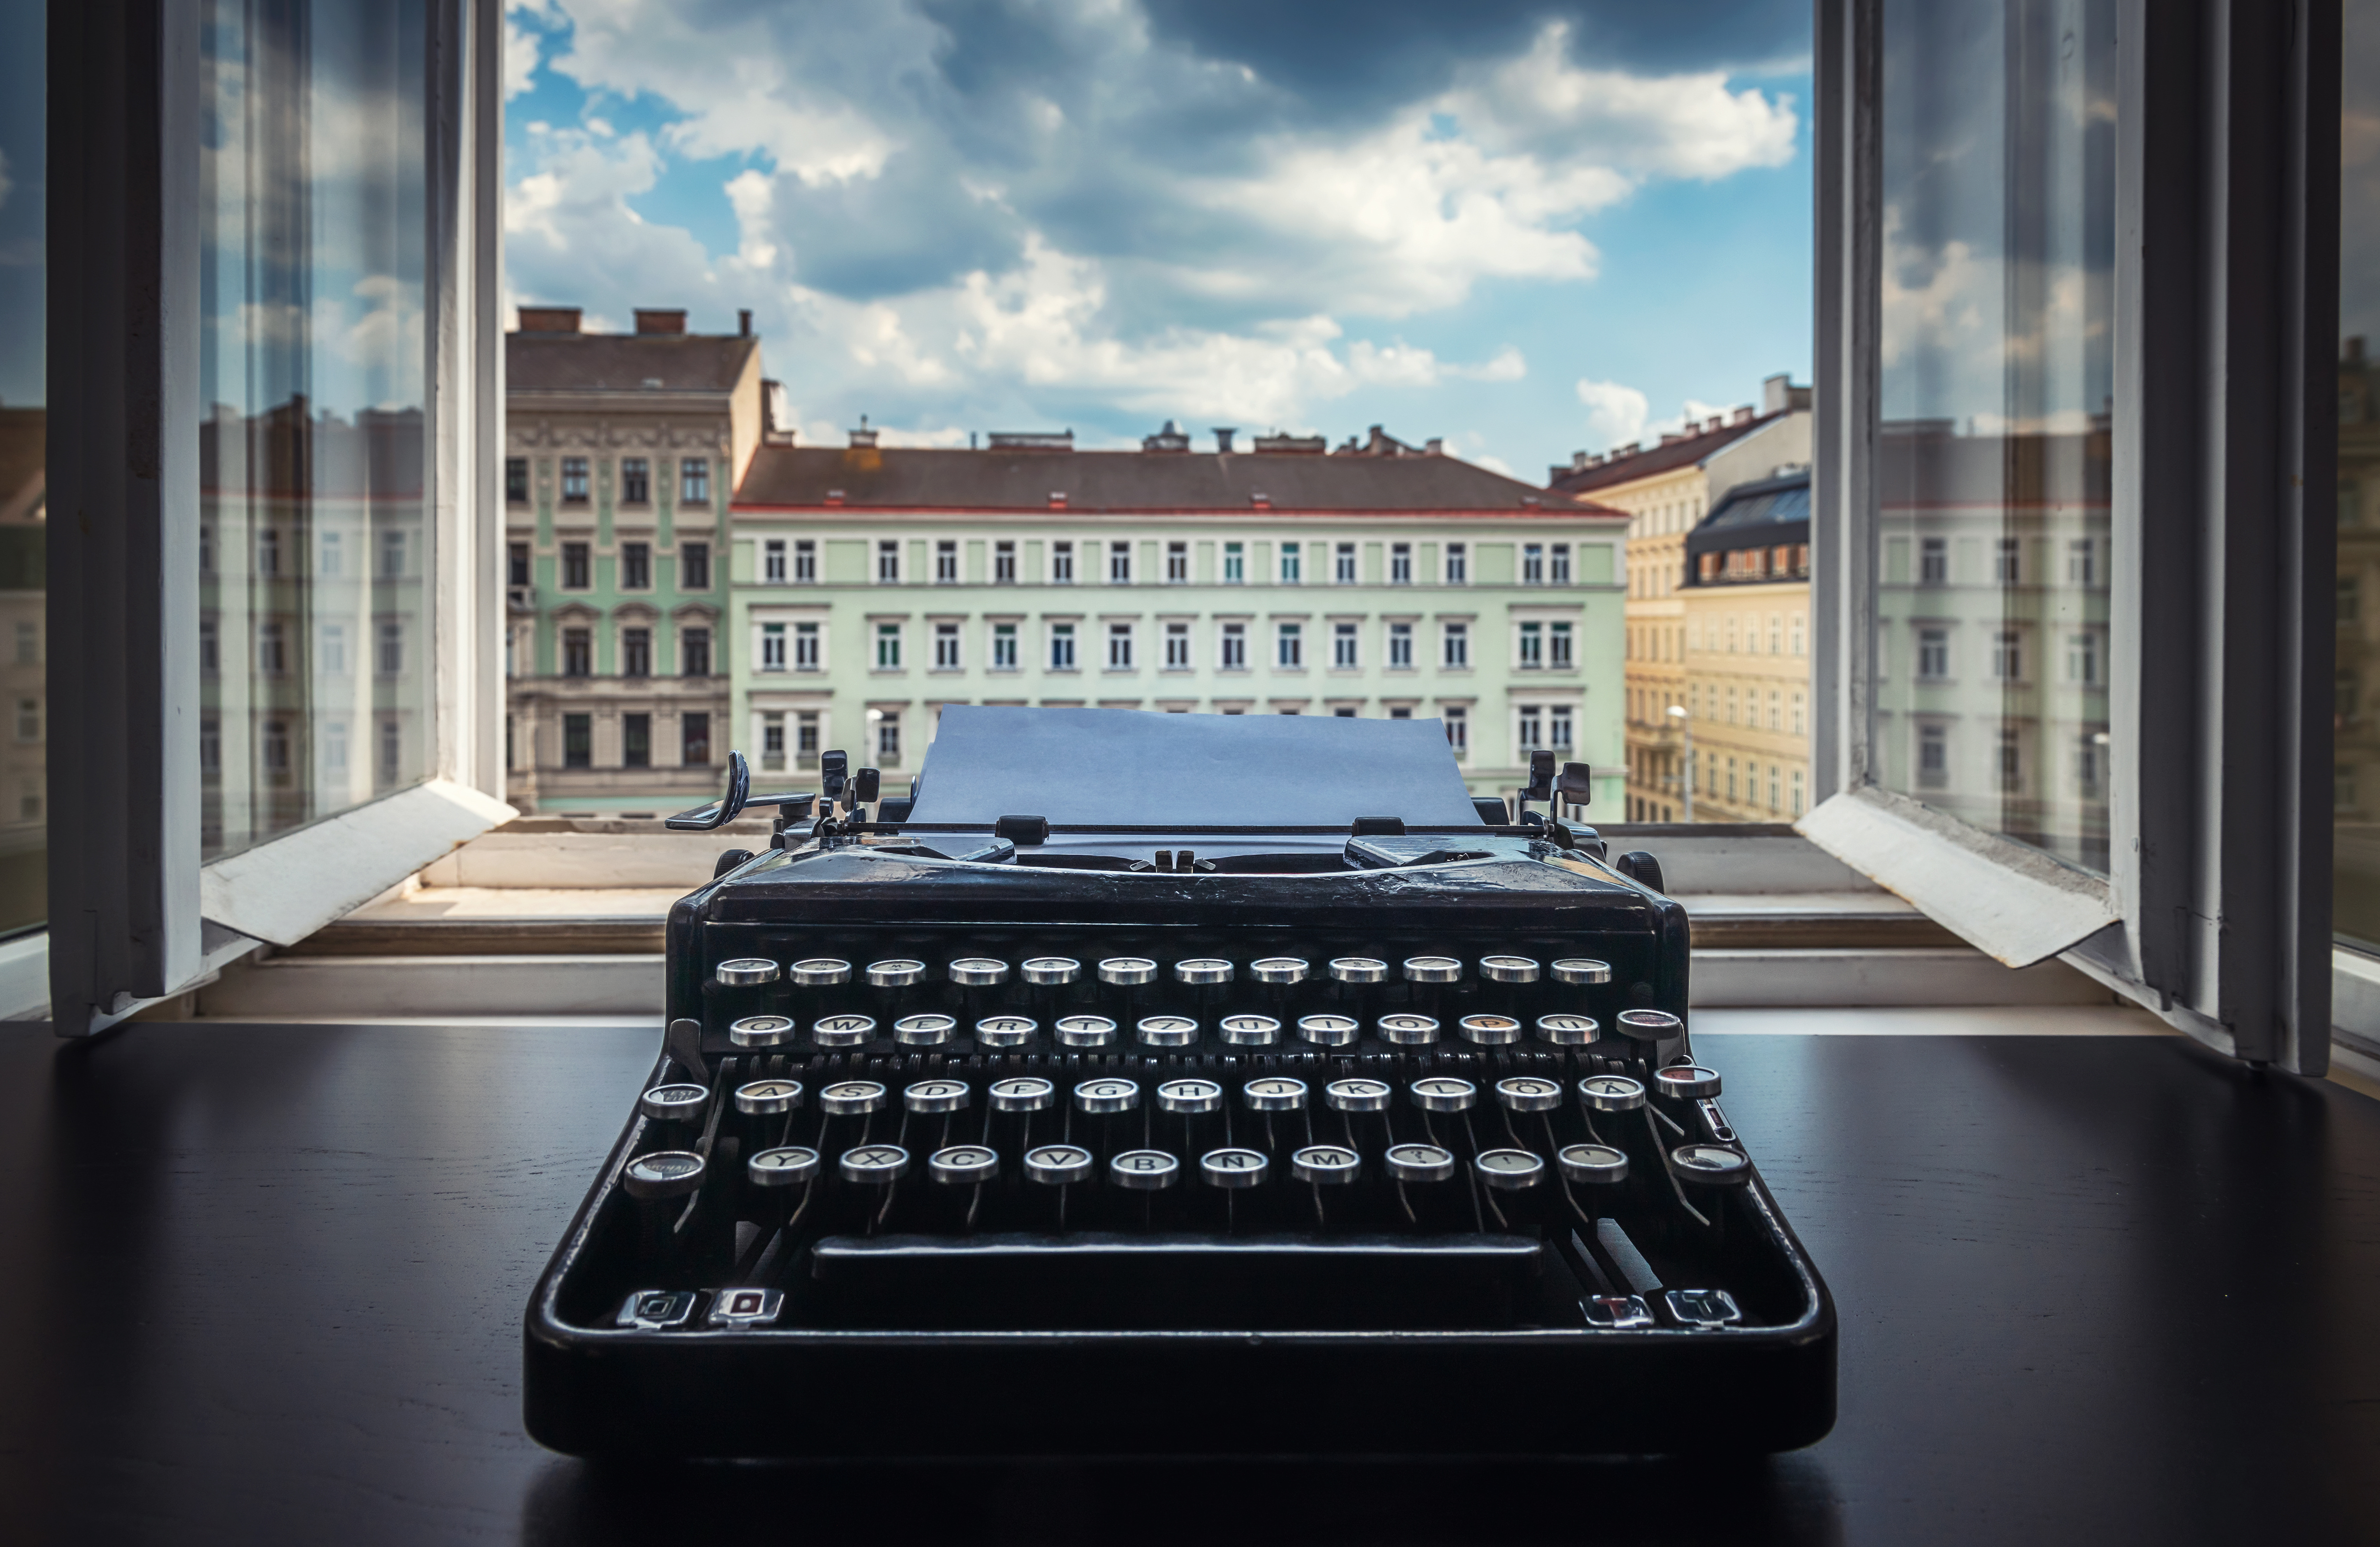 Schreibmaschine vor offenem Fenstter Unternehmensgeschichte